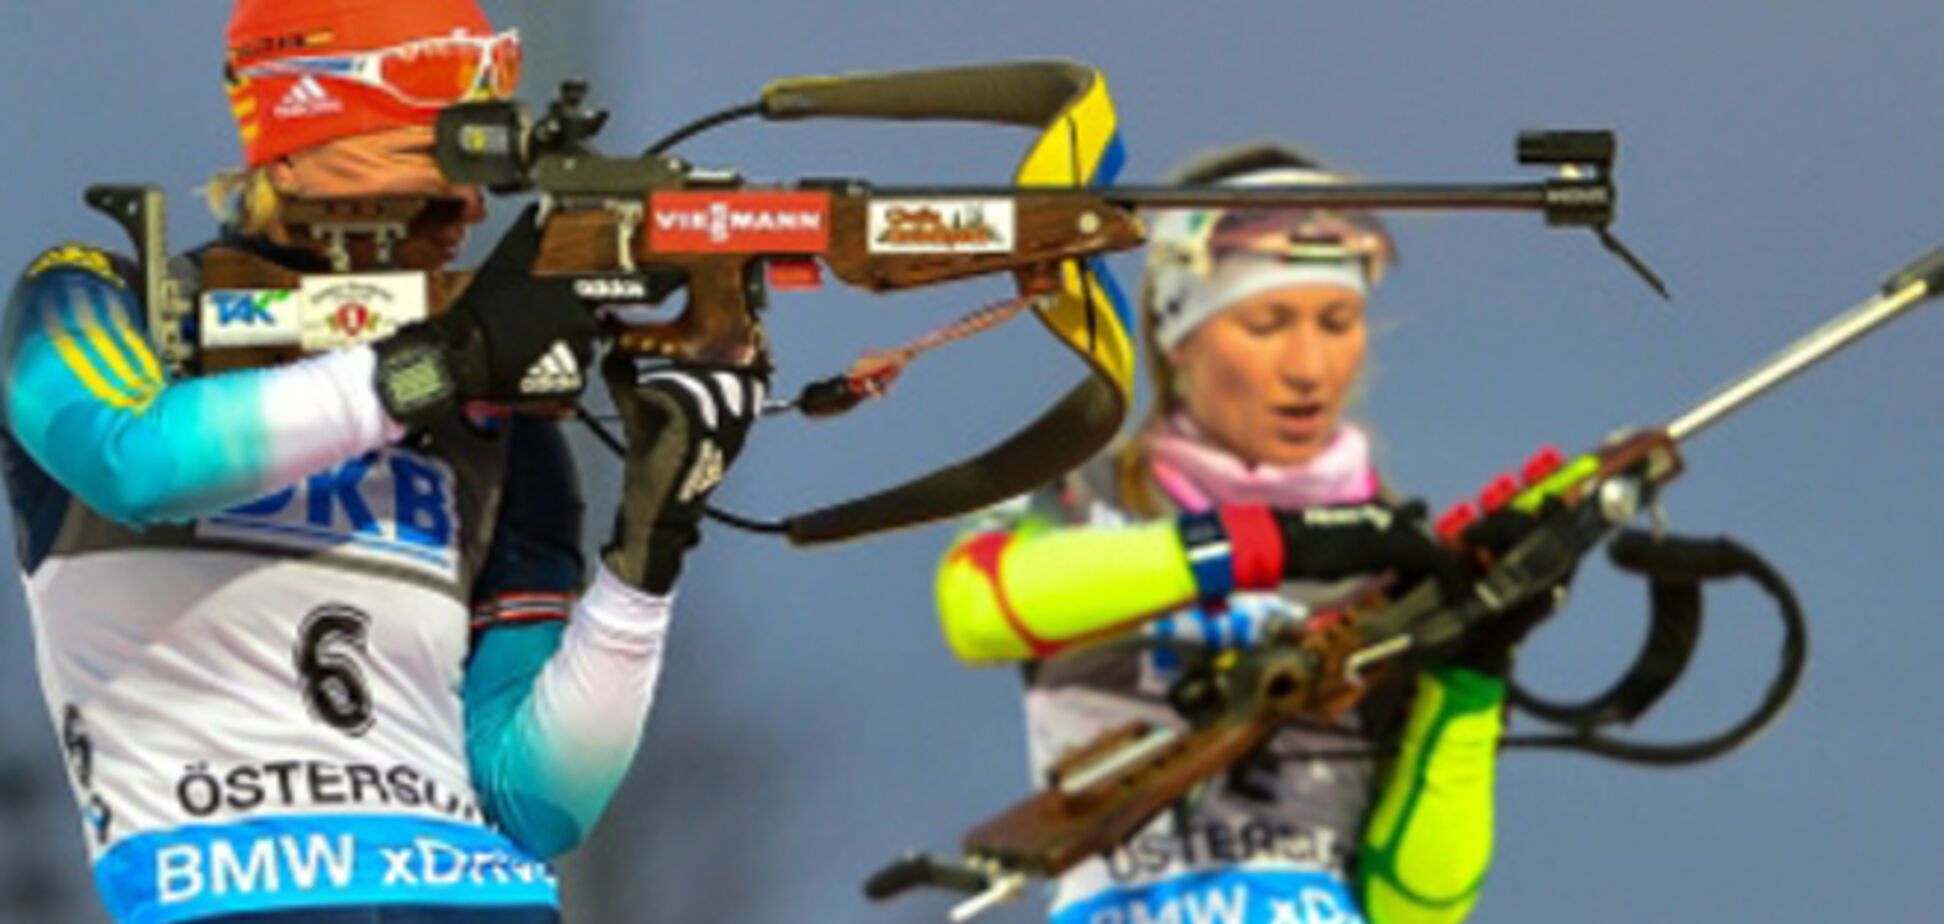 Украина назвала состав на женский спринт Кубка мира по биатлону